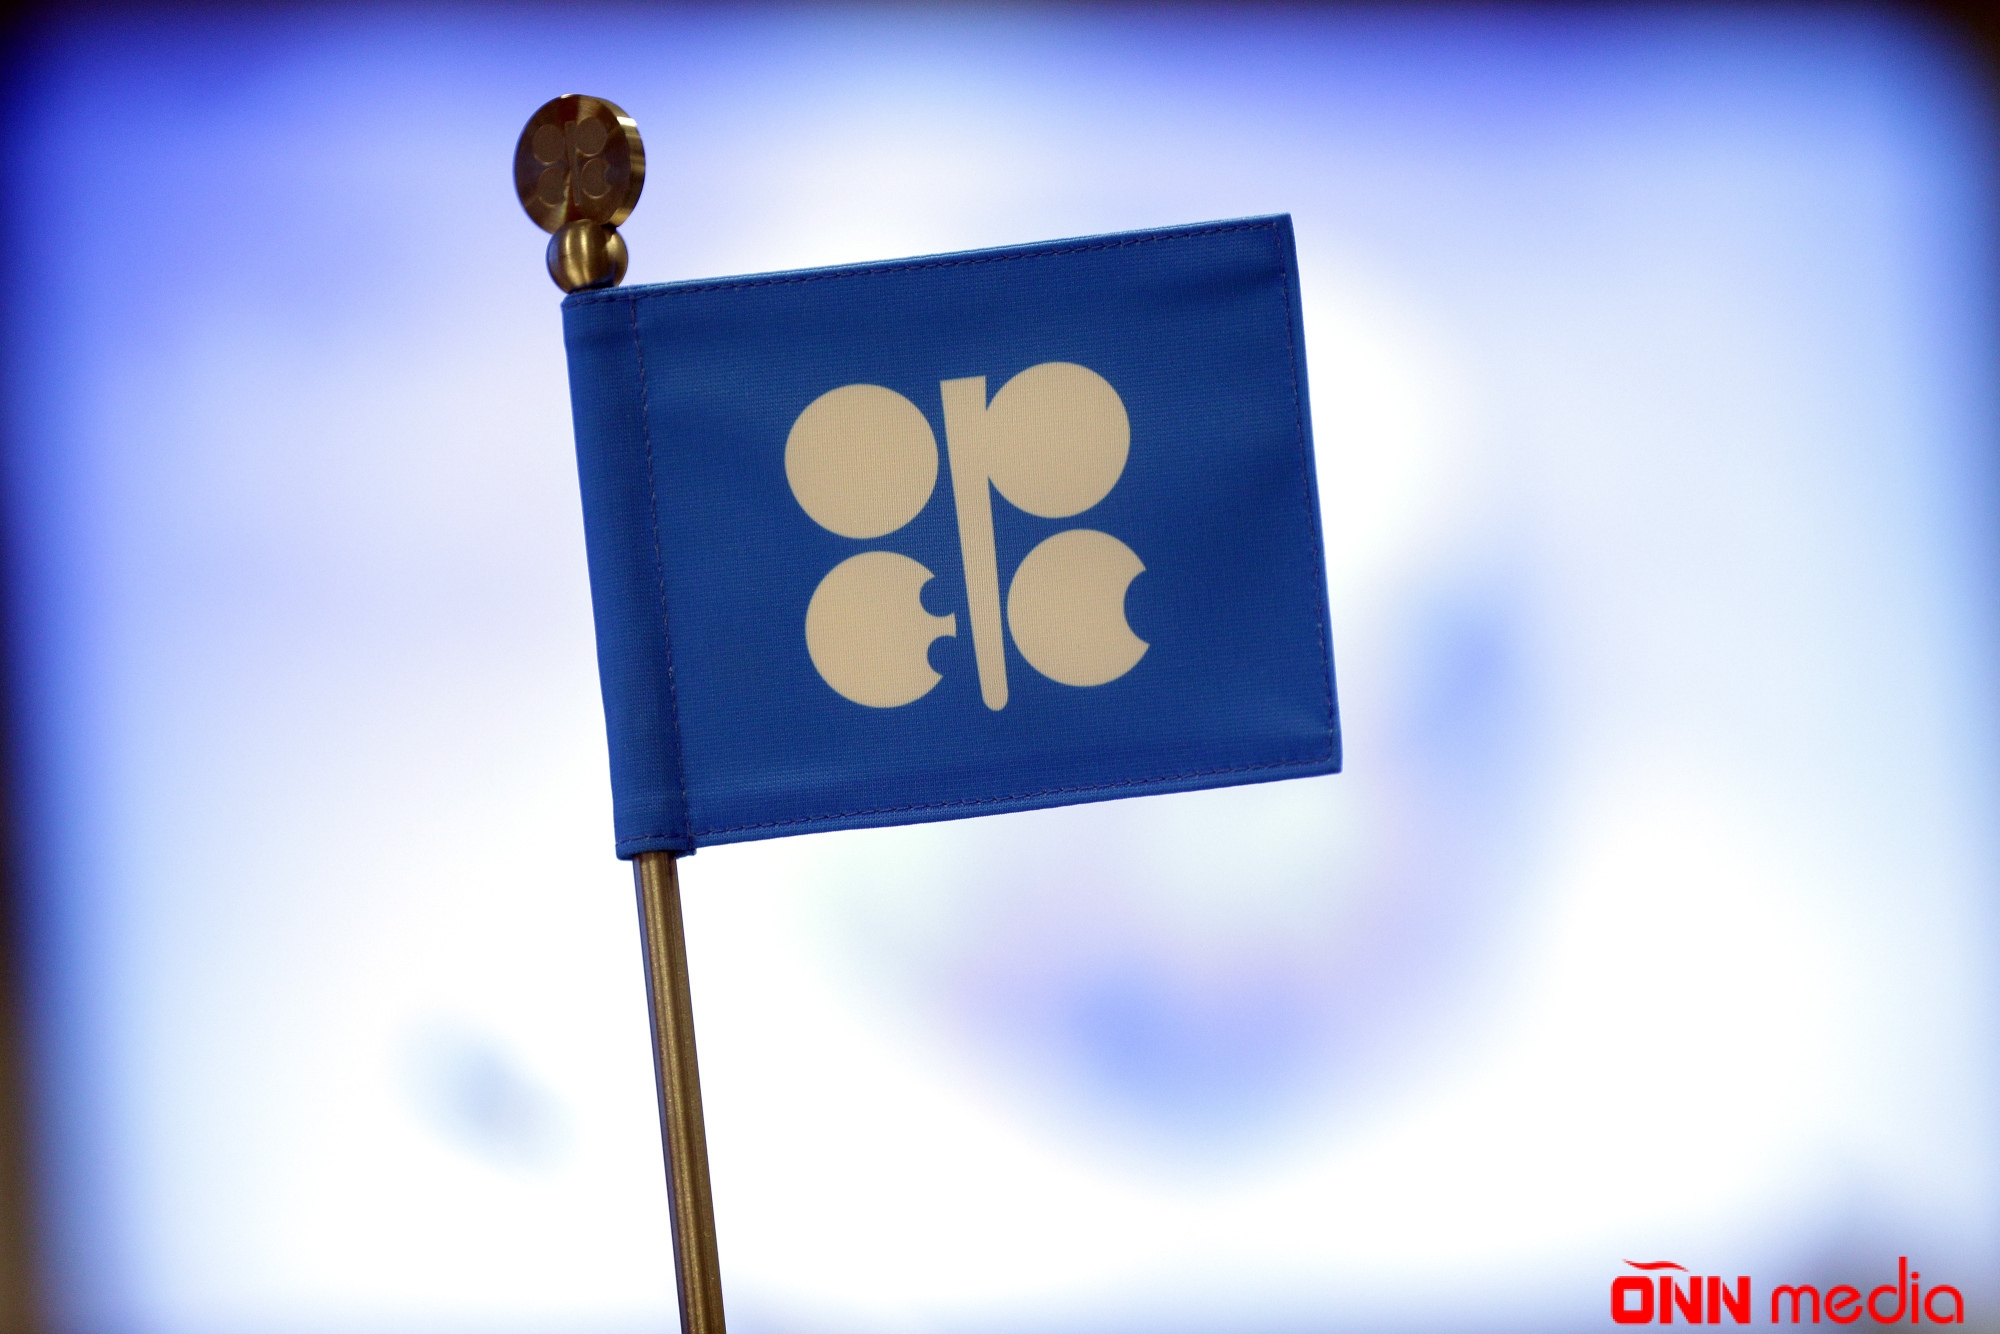 Azərbaycan “OPEC plus” üzrə hasilatın artırılmasına razılıq verdi